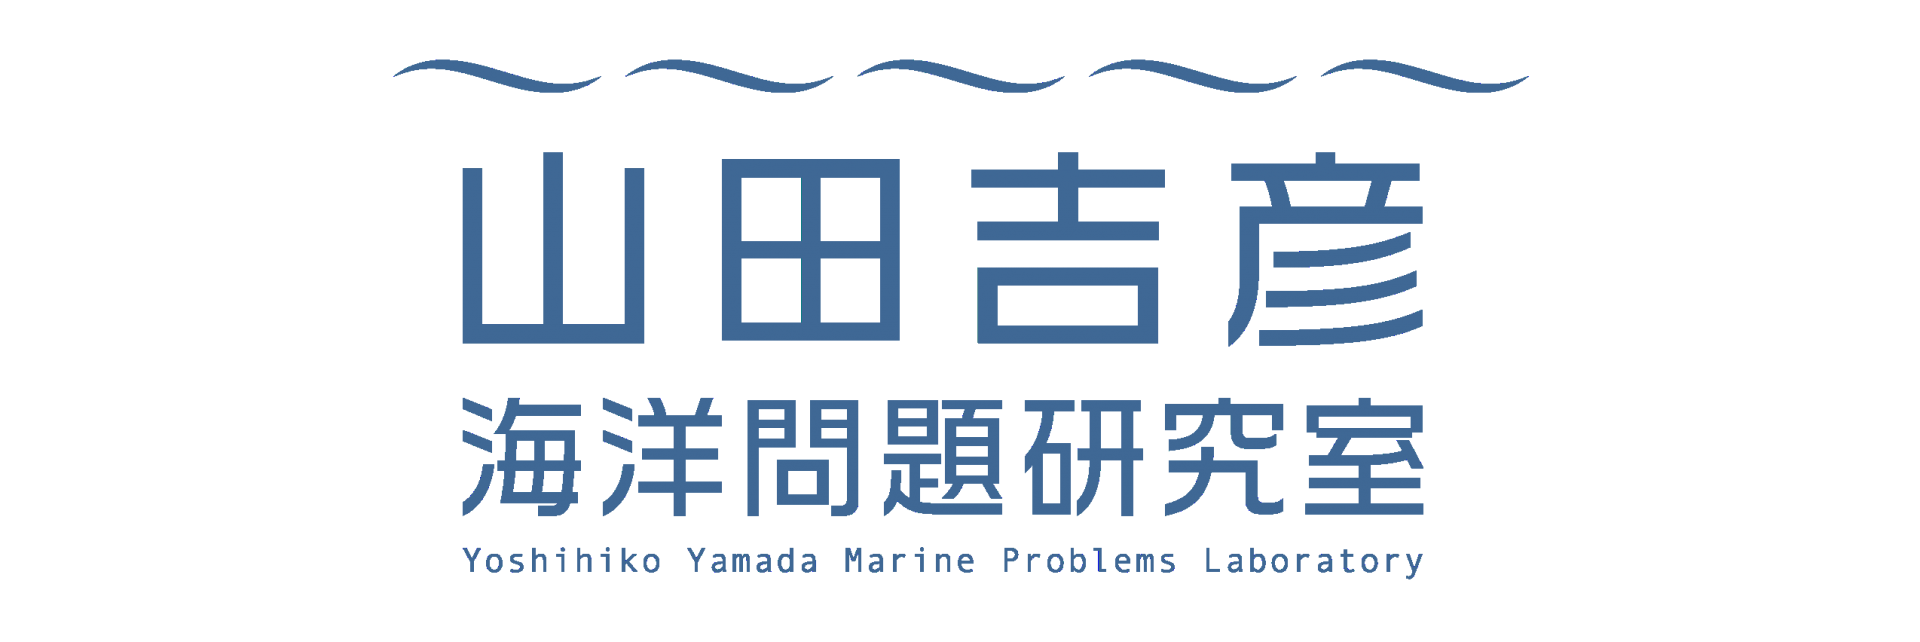 山田吉彦海洋問題研究室